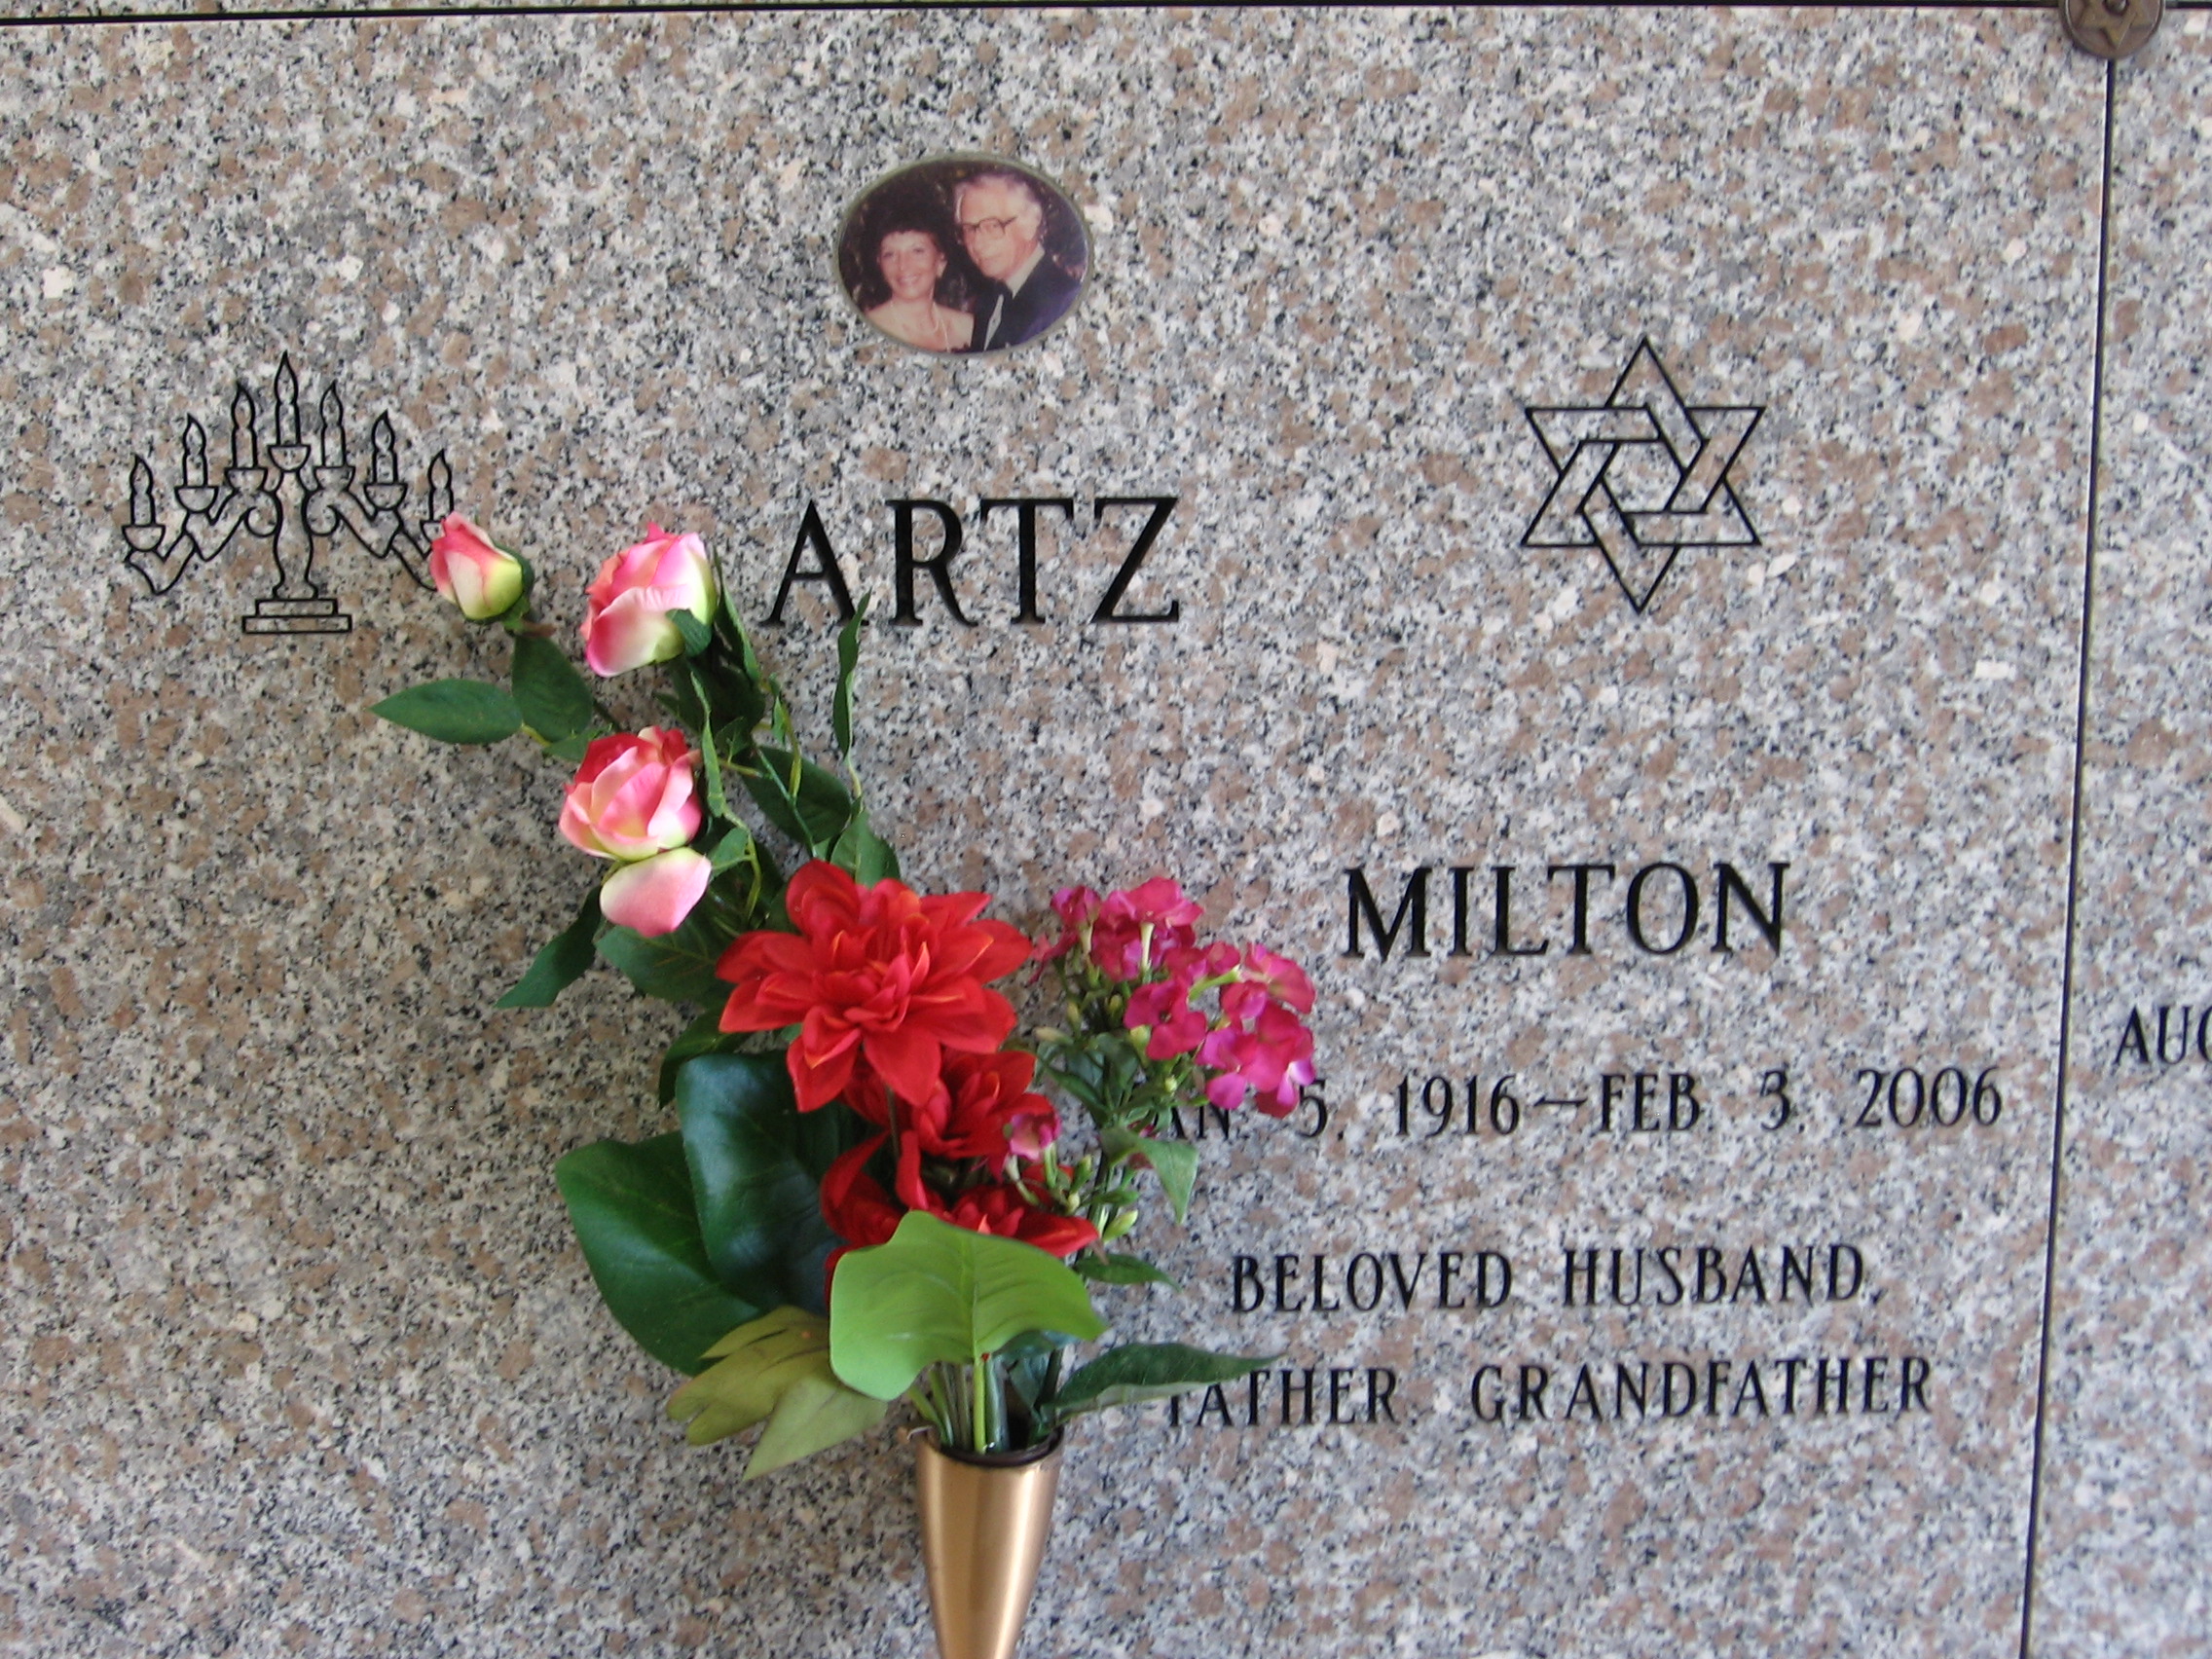 Milton Artz